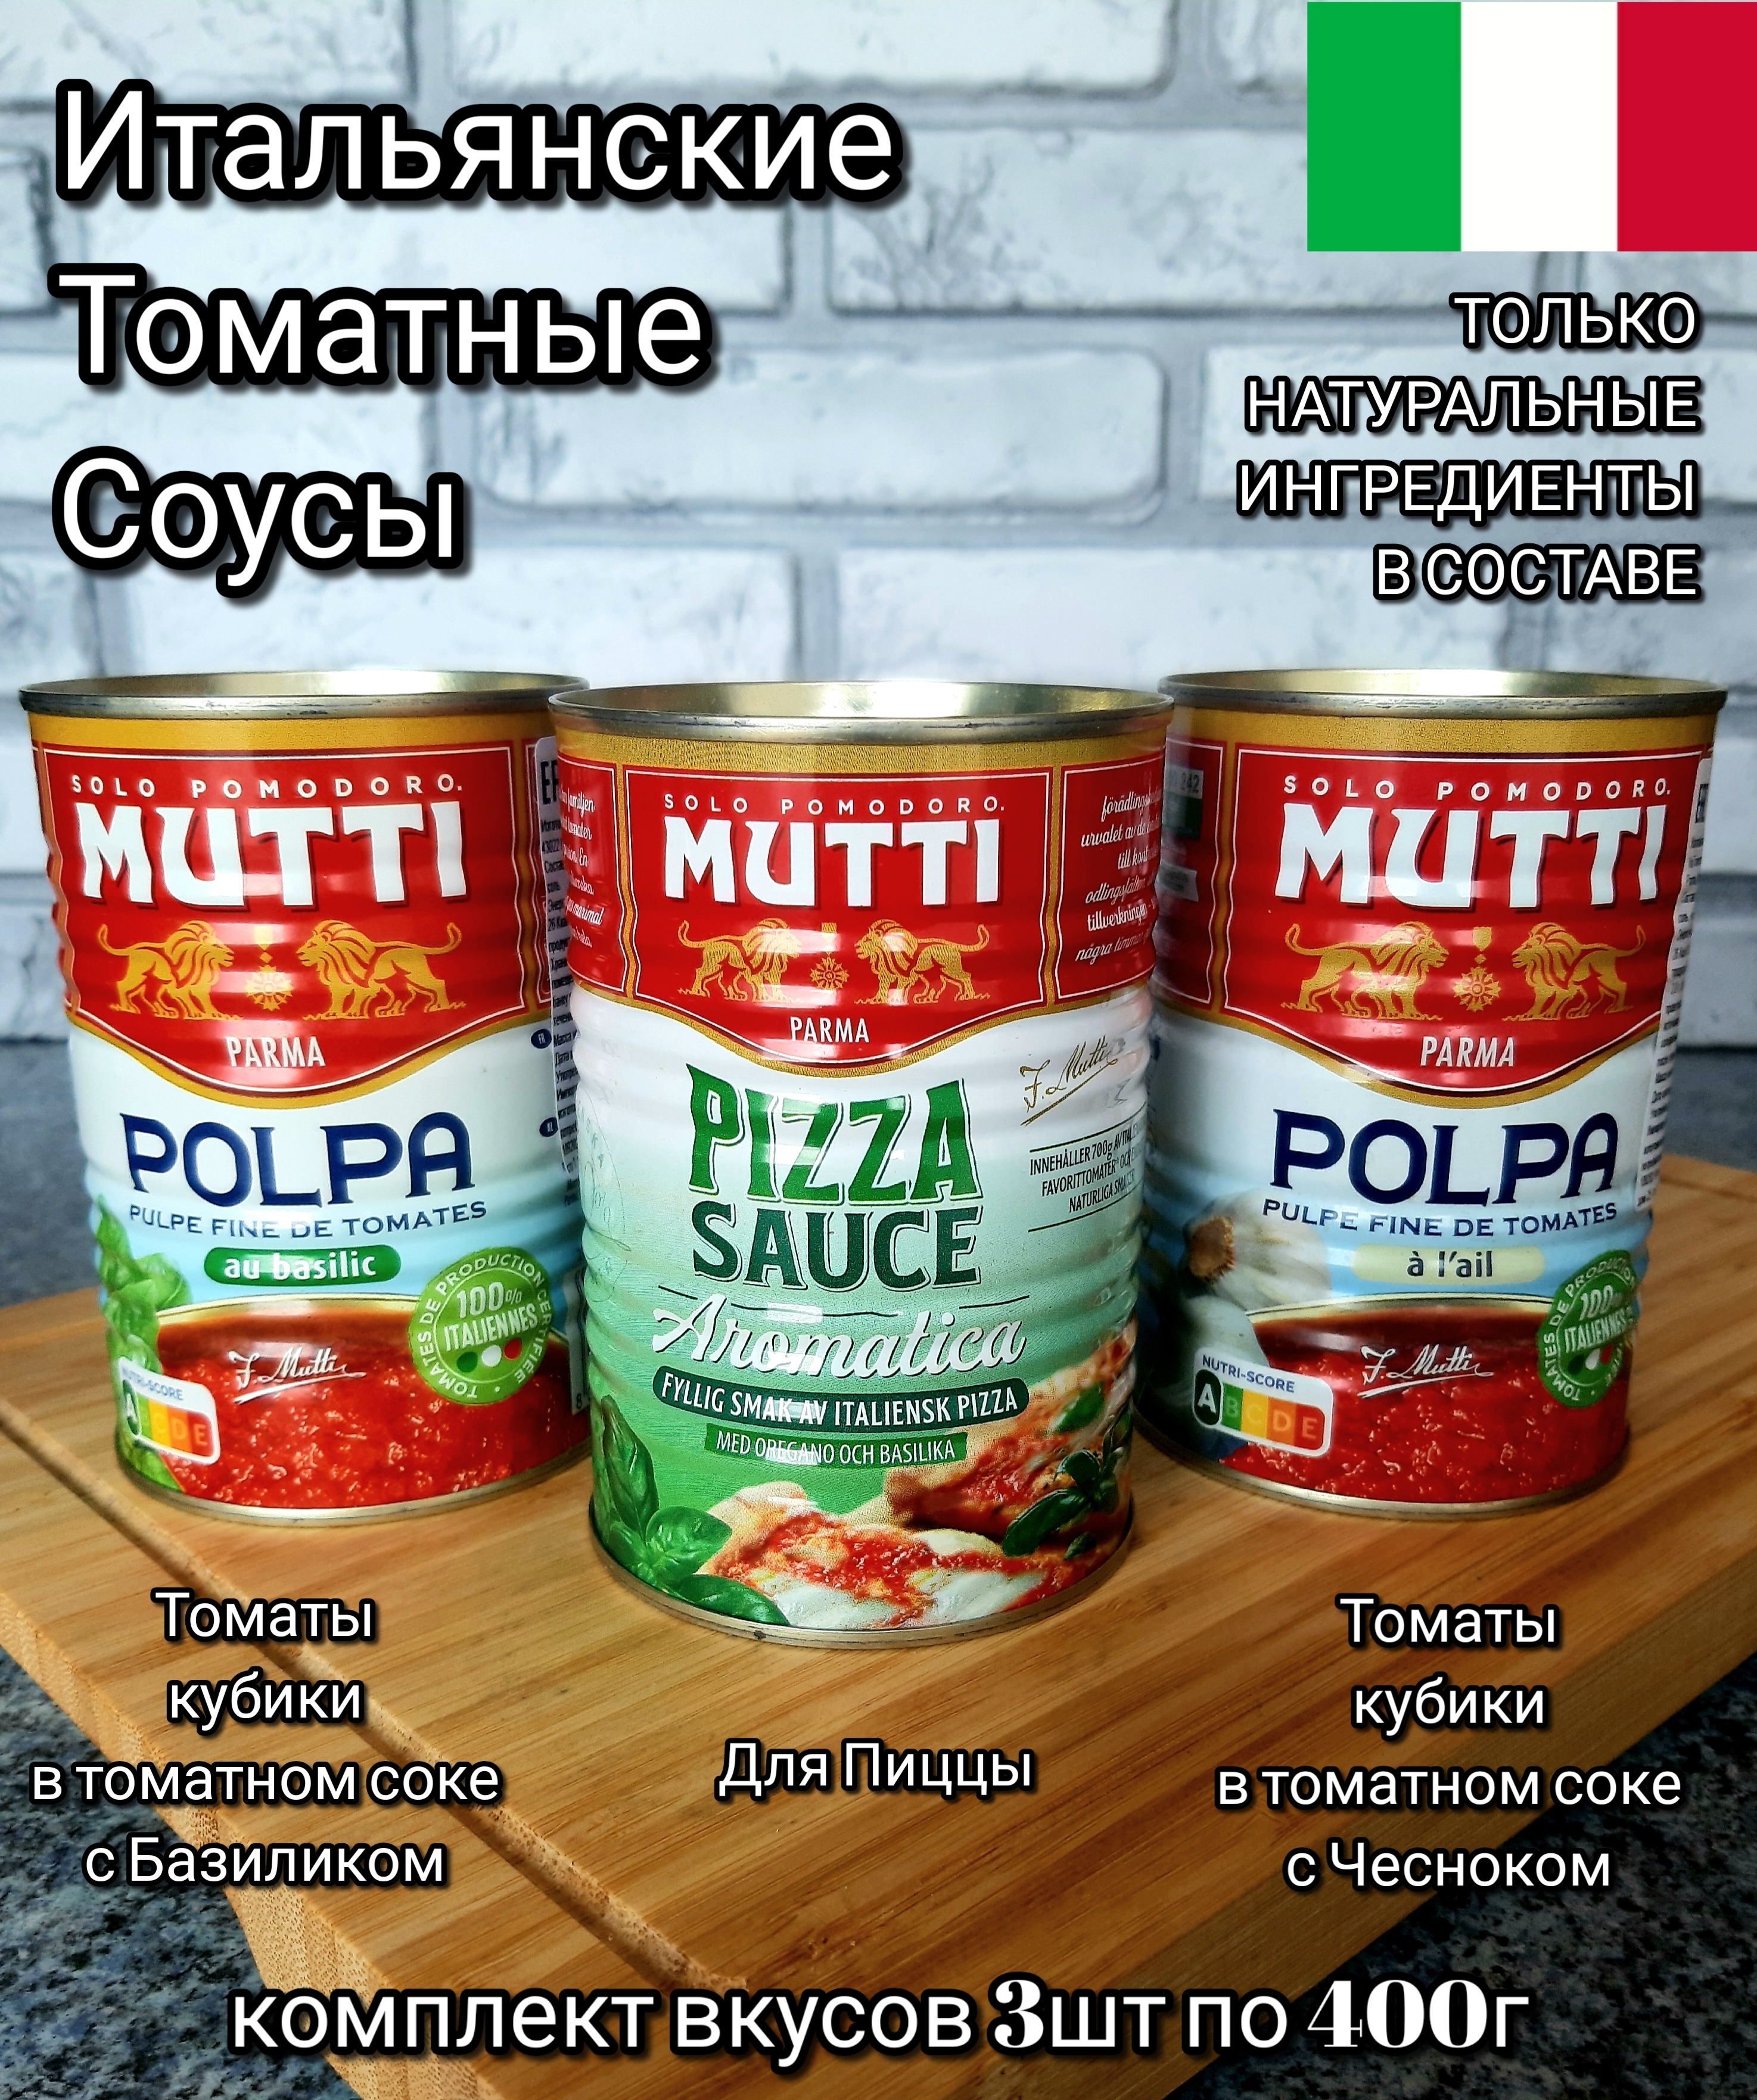 томатный соус для пиццы mutti состав фото 107